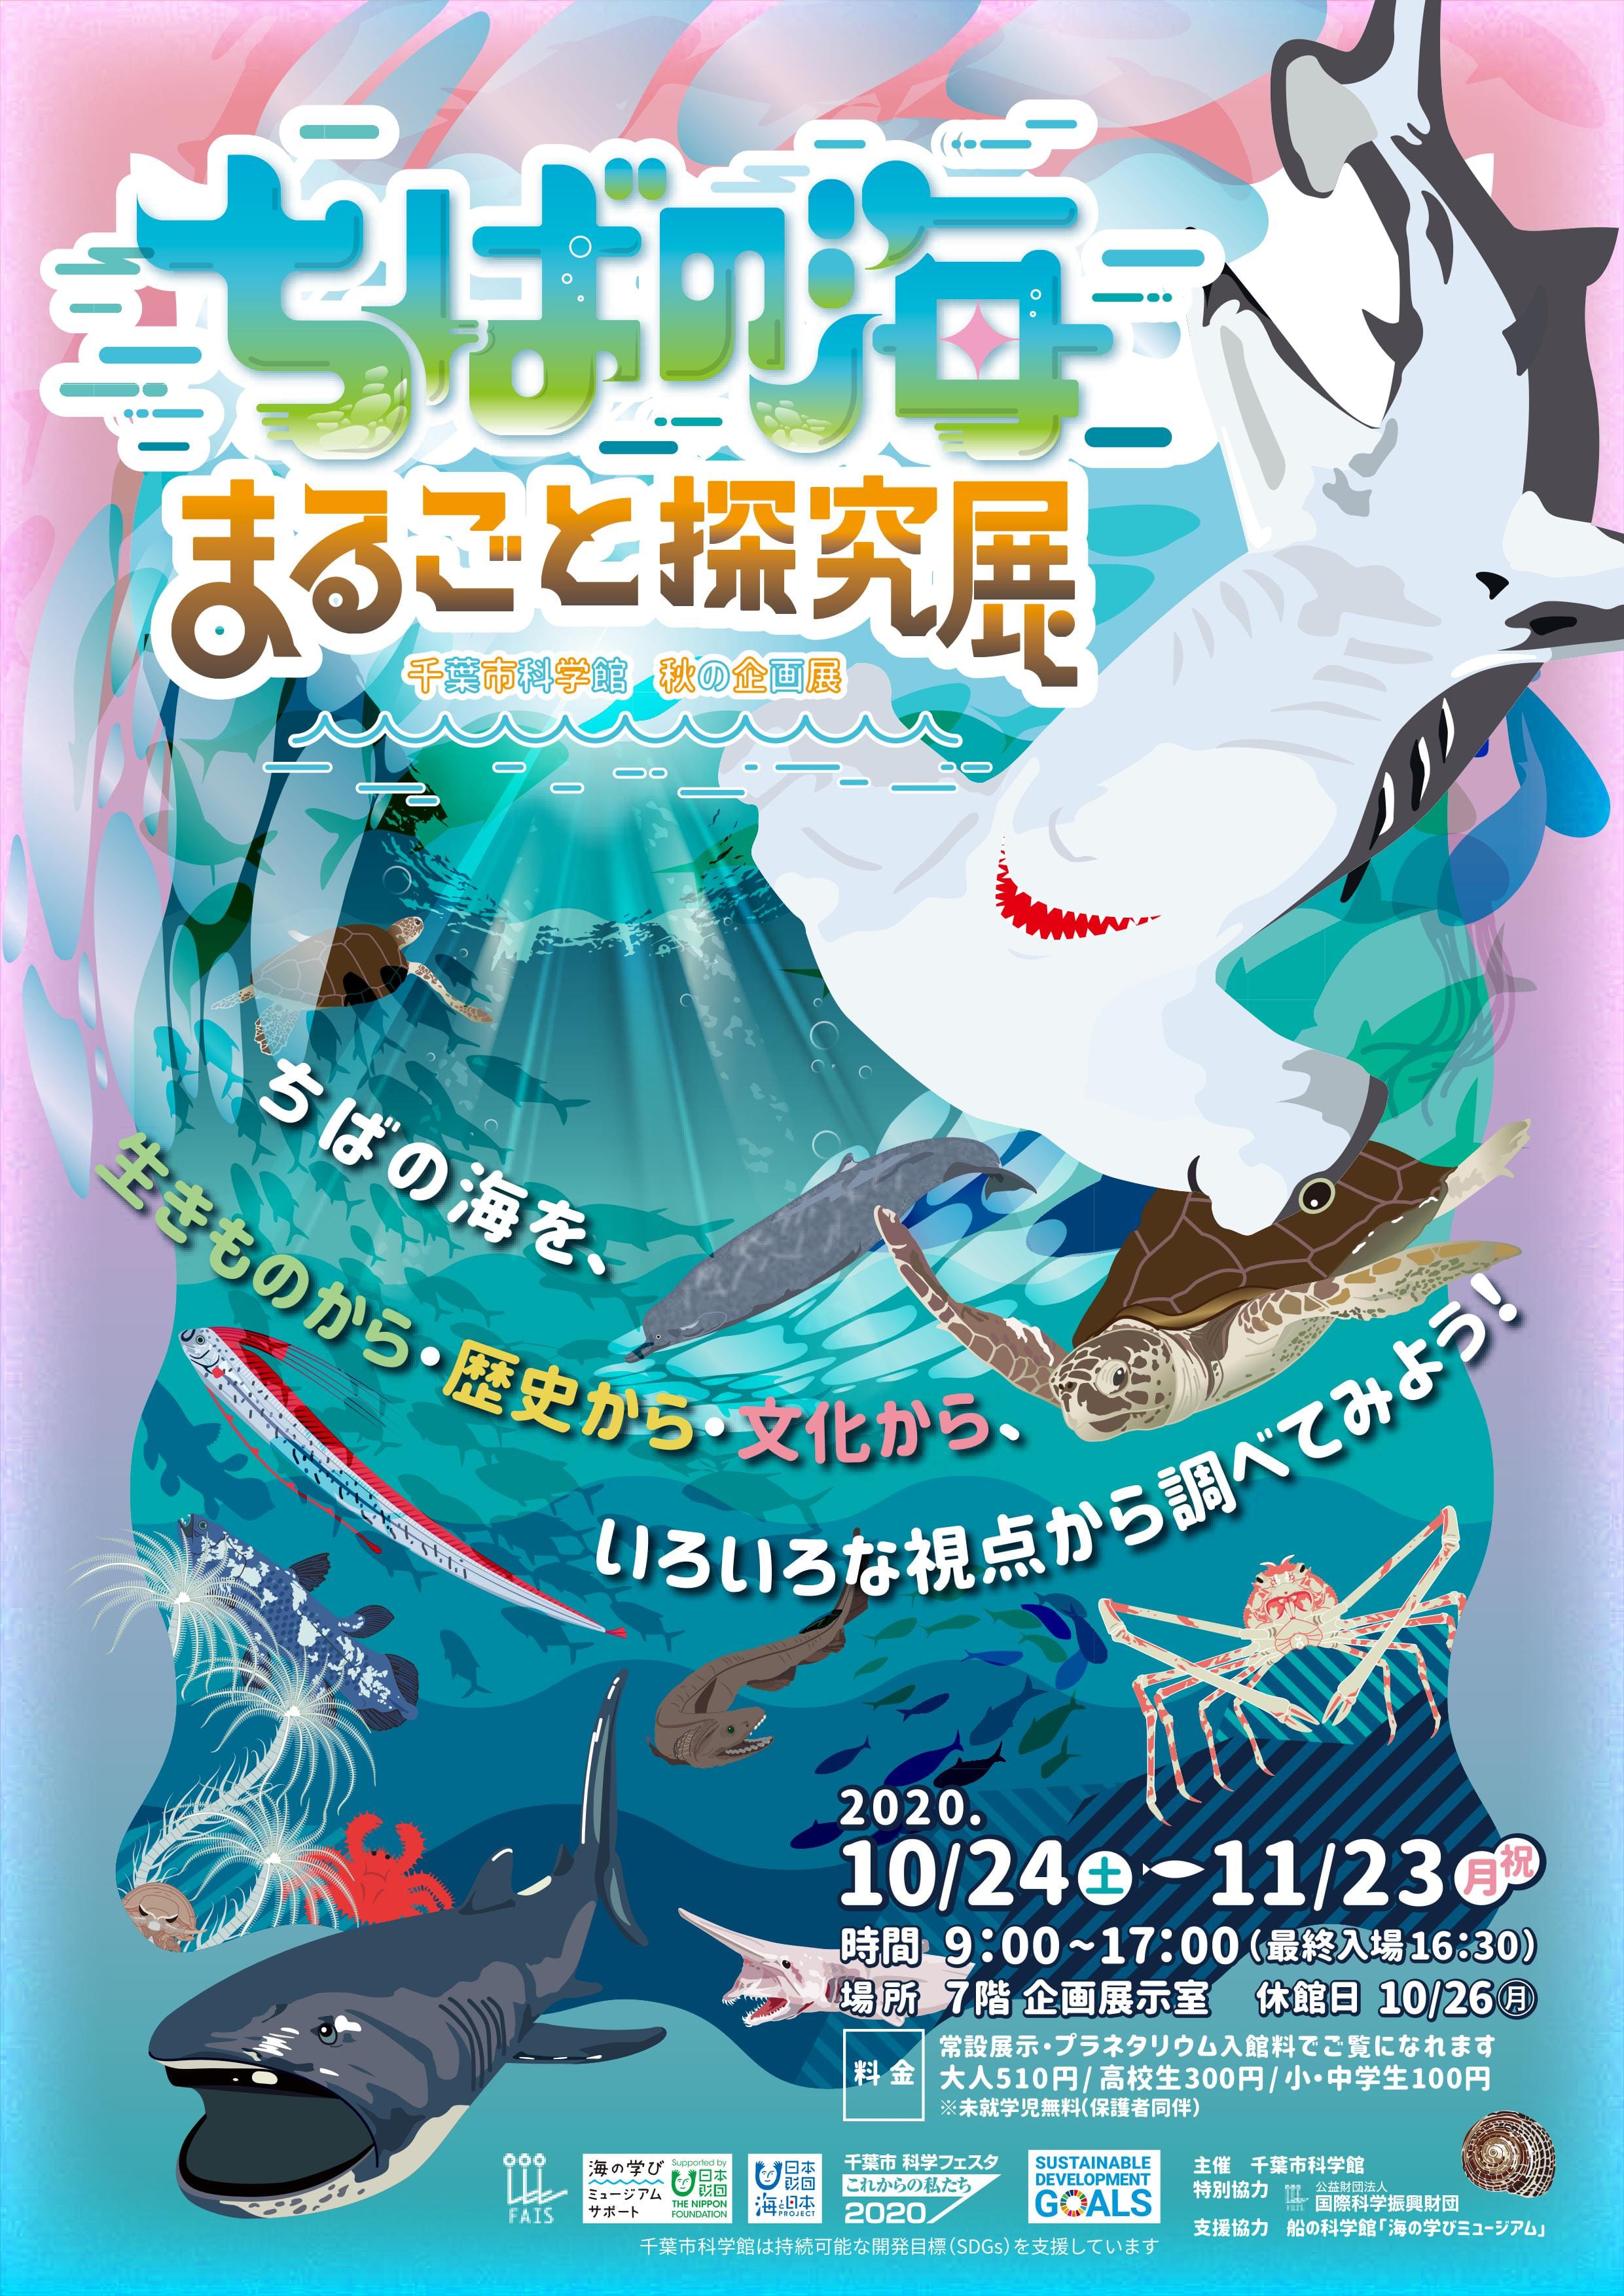 企画展「ちばの海まるごと探究展」において「千葉県内の海洋ゴミ」についての展示とプラスチックをテーマにした講演会の実施